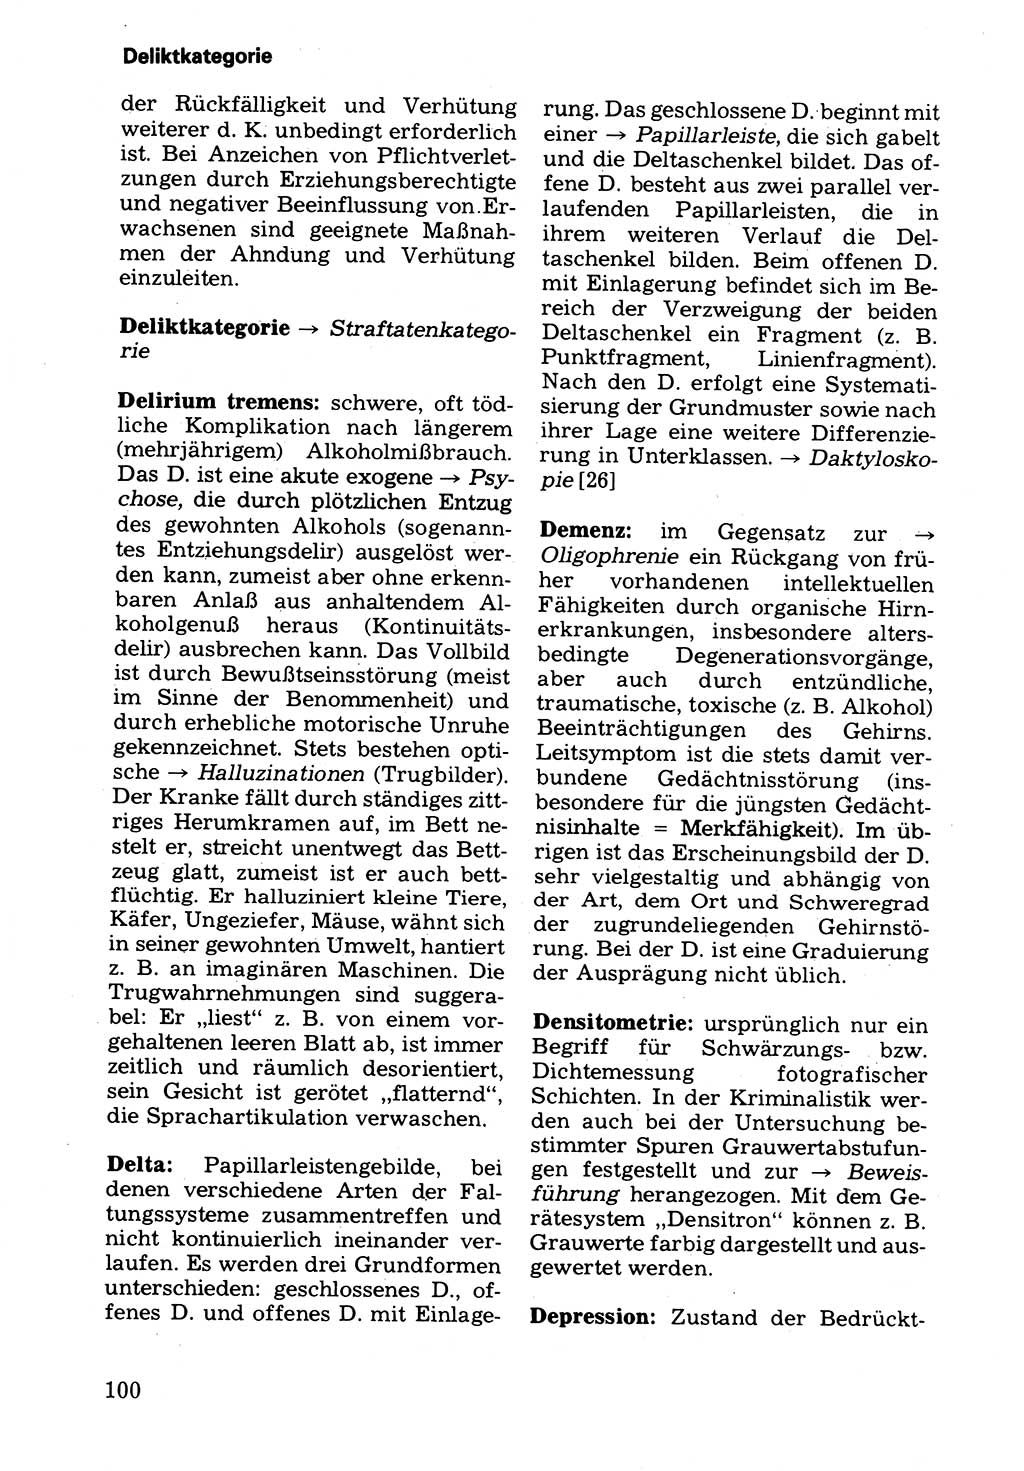 Wörterbuch der sozialistischen Kriminalistik [Deutsche Demokratische Republik (DDR)] 1981, Seite 100 (Wb. soz. Krim. DDR 1981, S. 100)